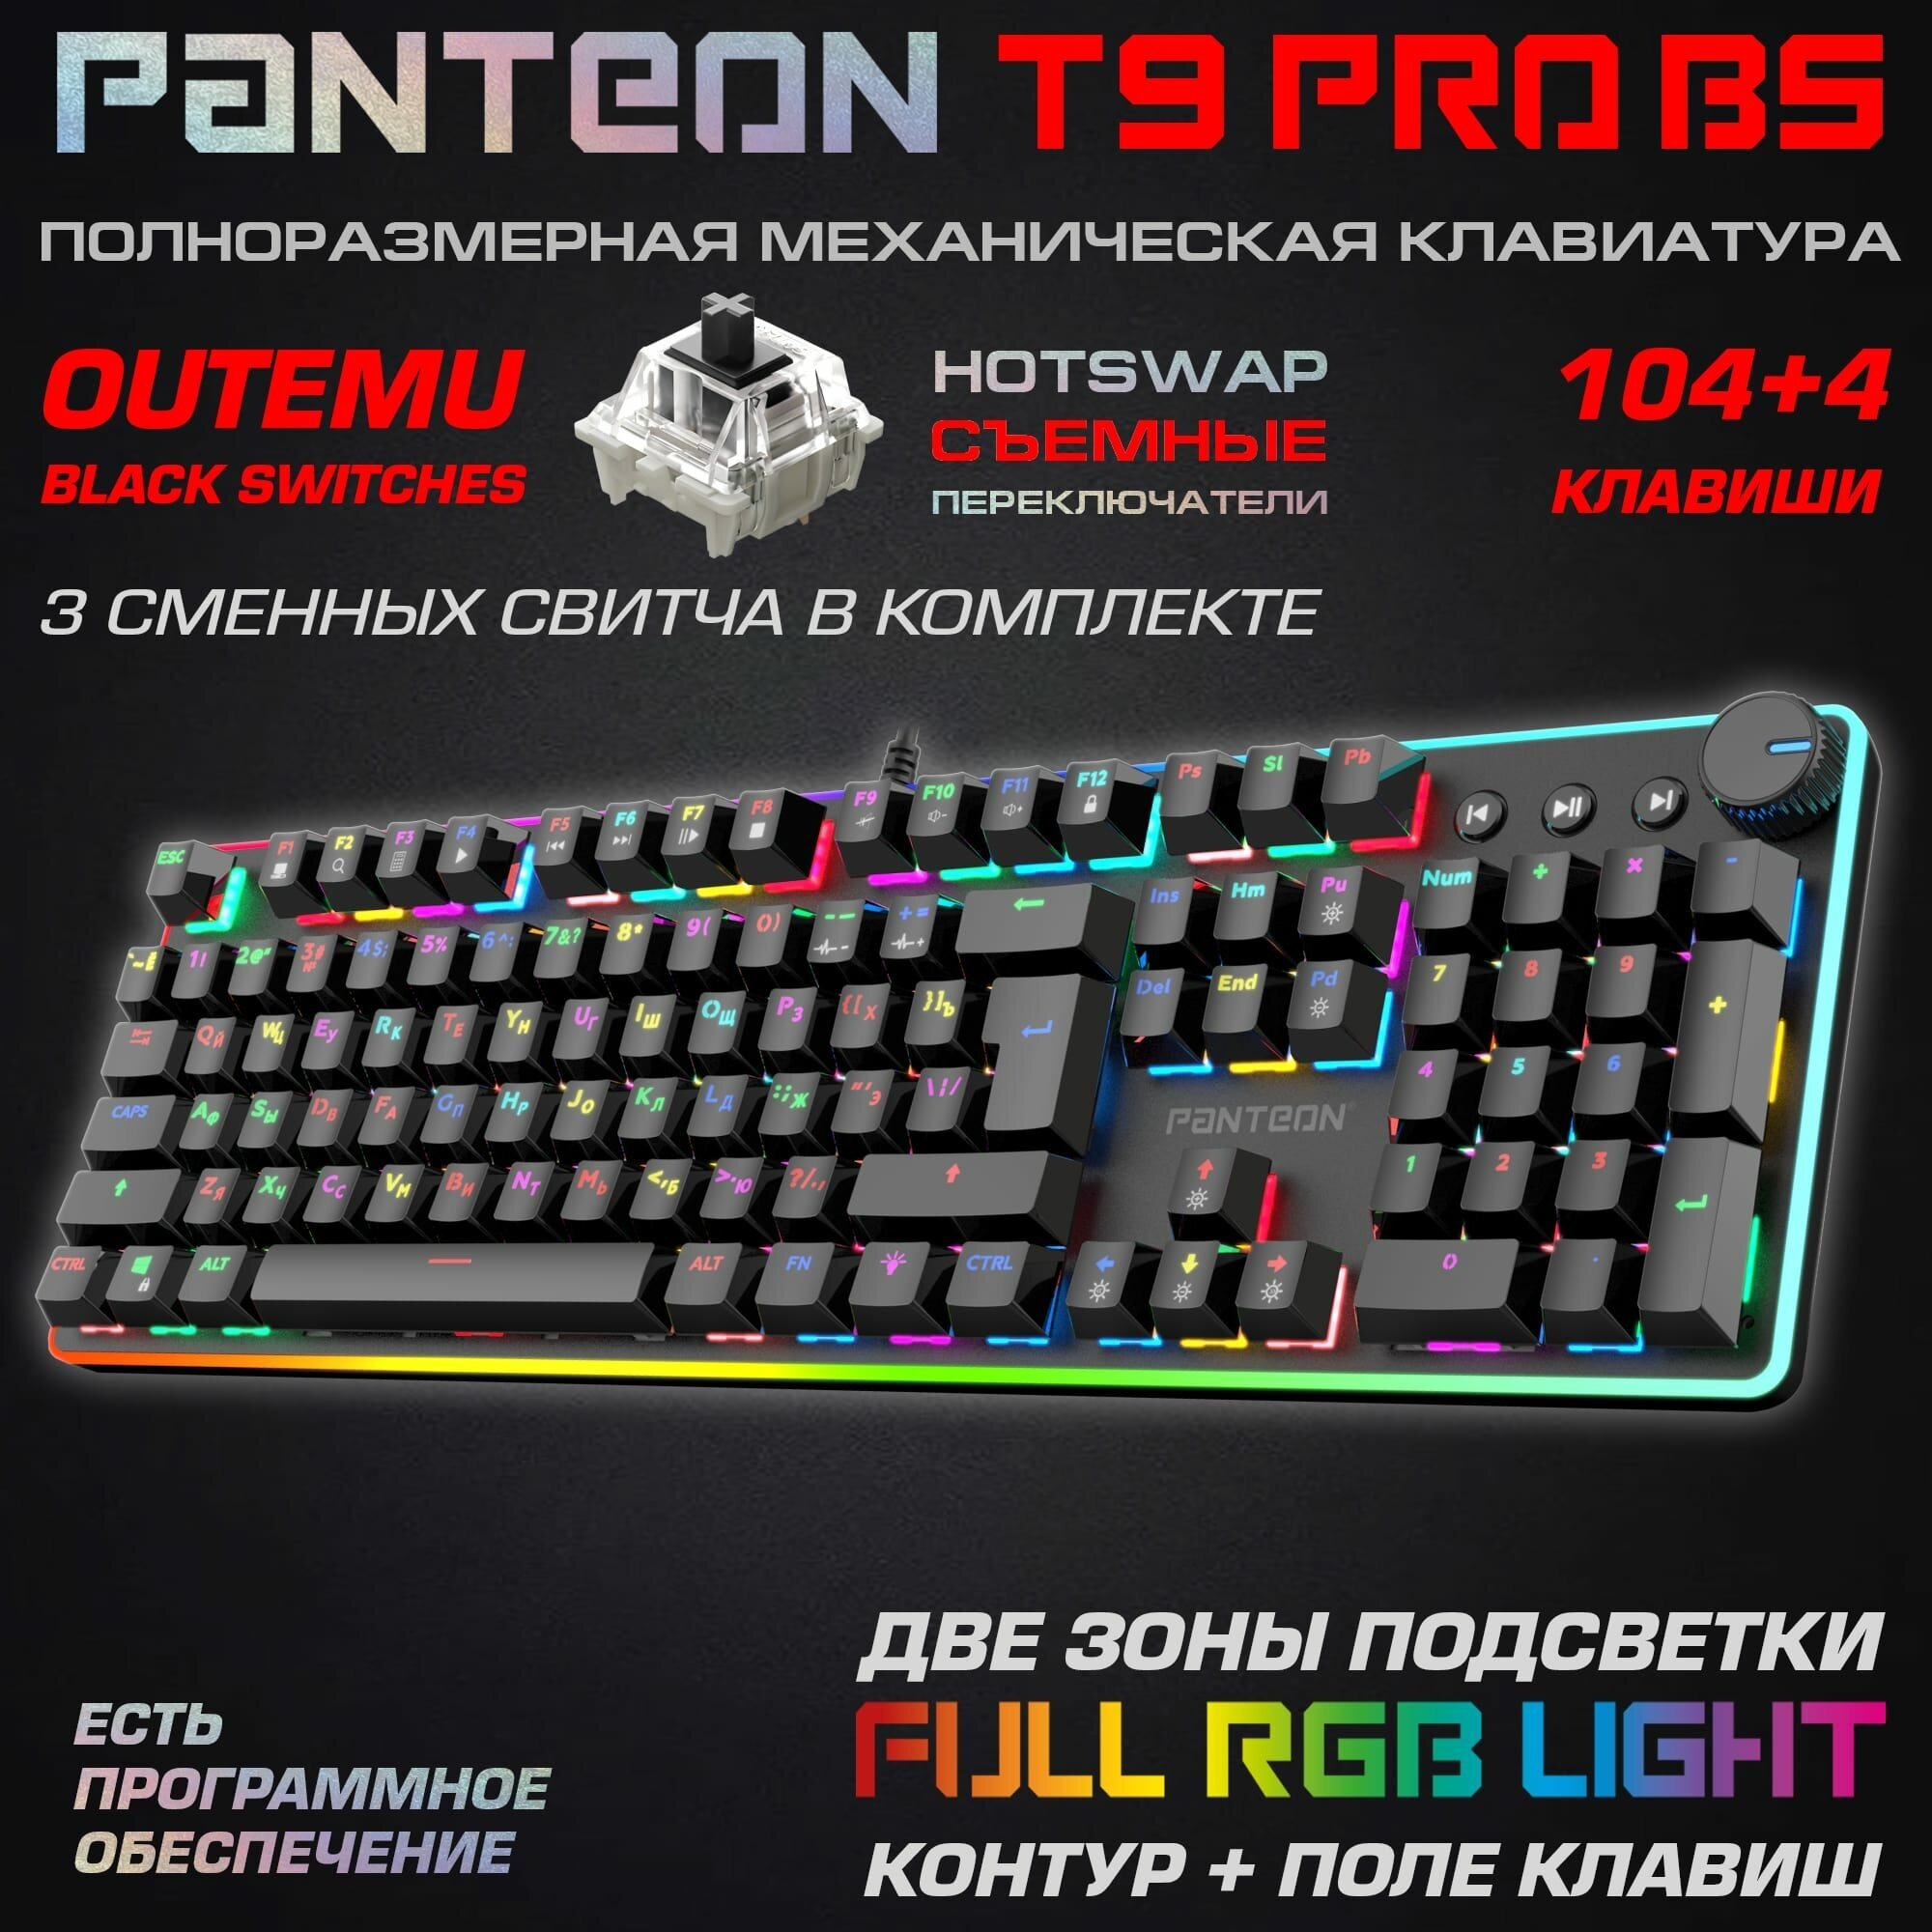 Механическая игровая клавиатура PANTEON T9 PRO BS(RGB LED,OUTEMU Black, HotSwap,104+4 кл.,USB) черная